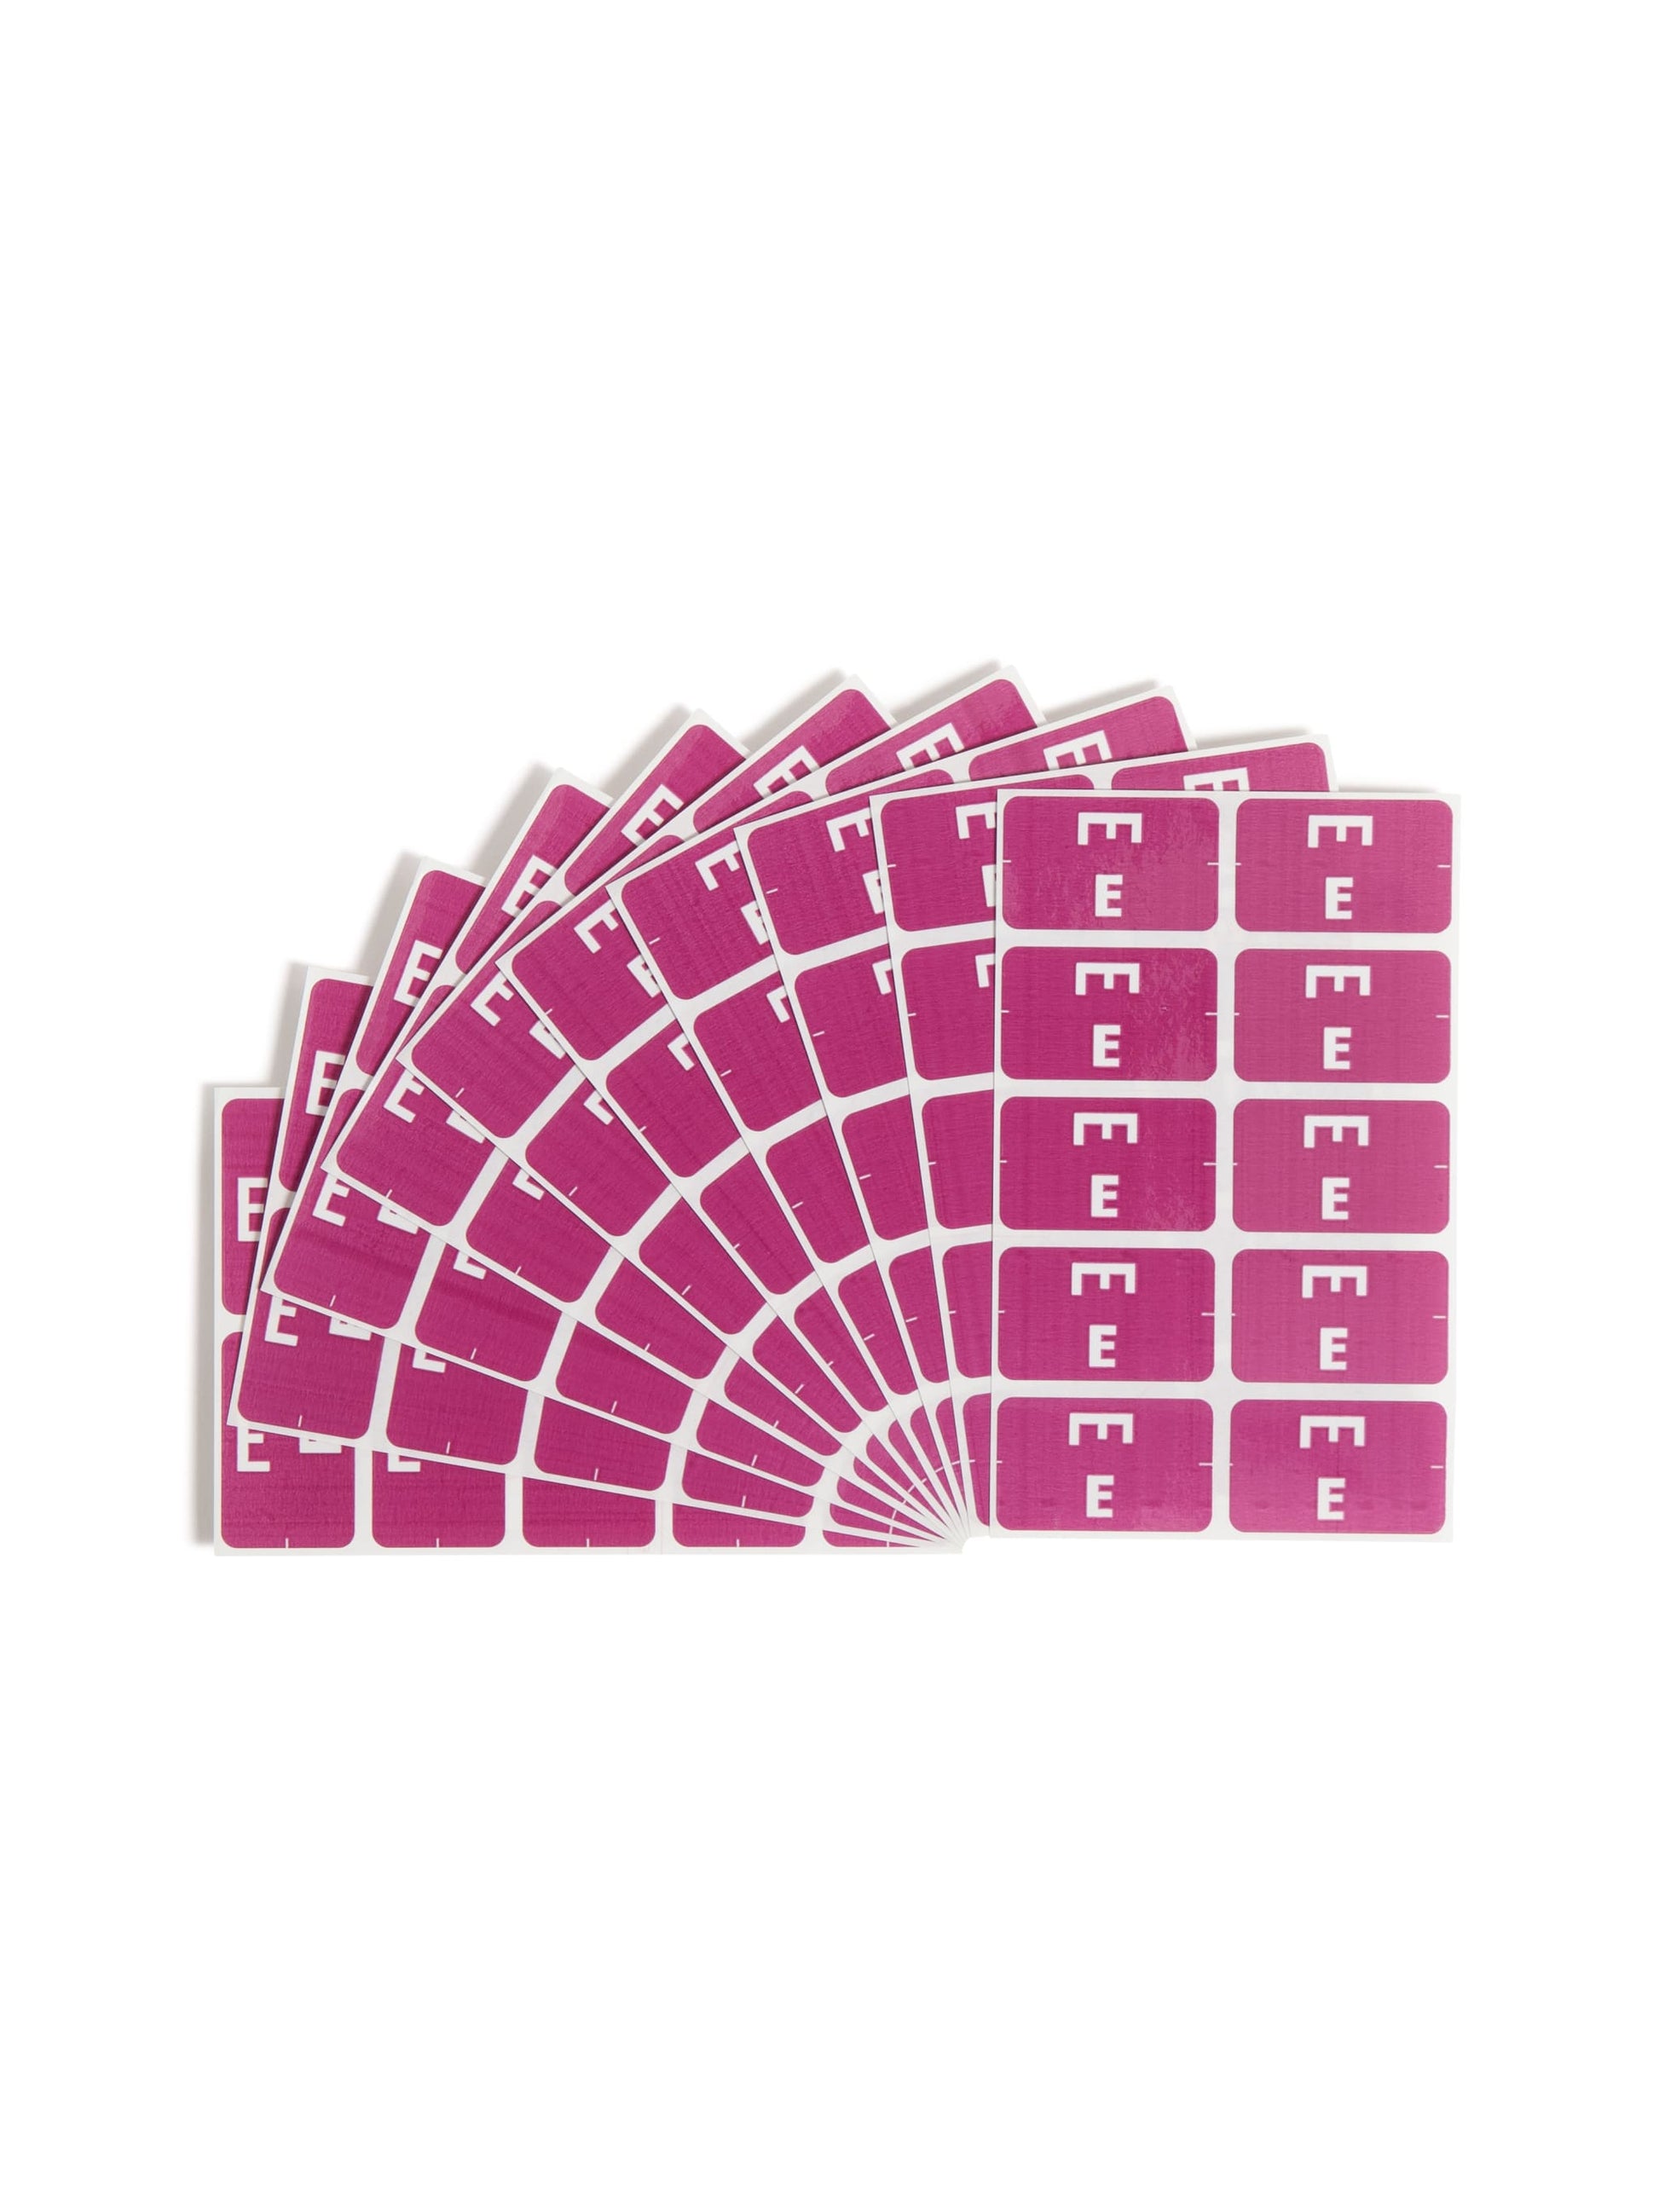 AlphaZ® ACCS Color Coded Alphabetic Labels - Sheets, Purple Color, 1" X 1-5/8" Size, Set of 1, 086486671750